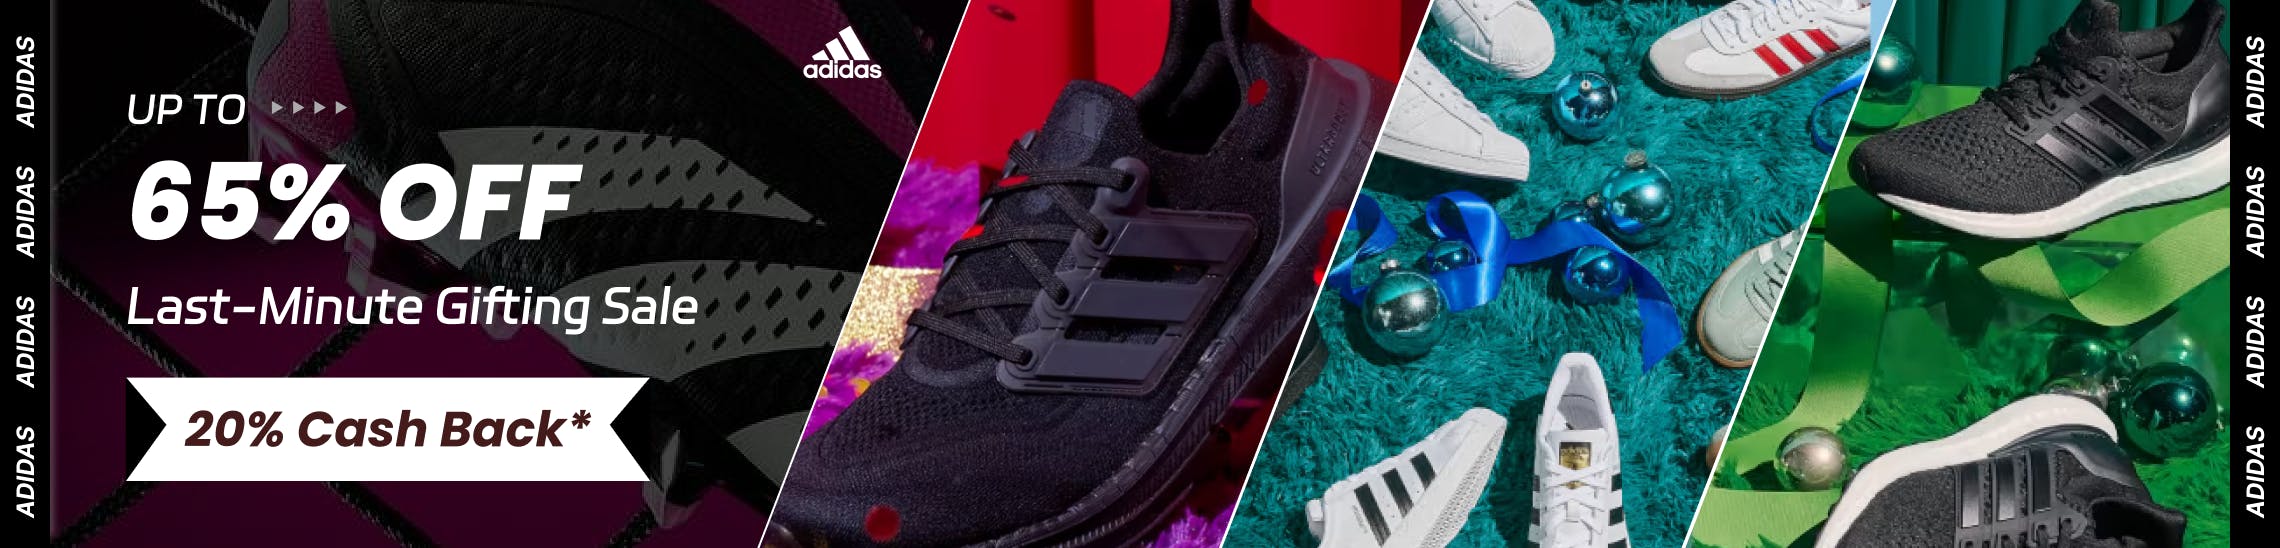 Adidas Promo Codes & Cash Back